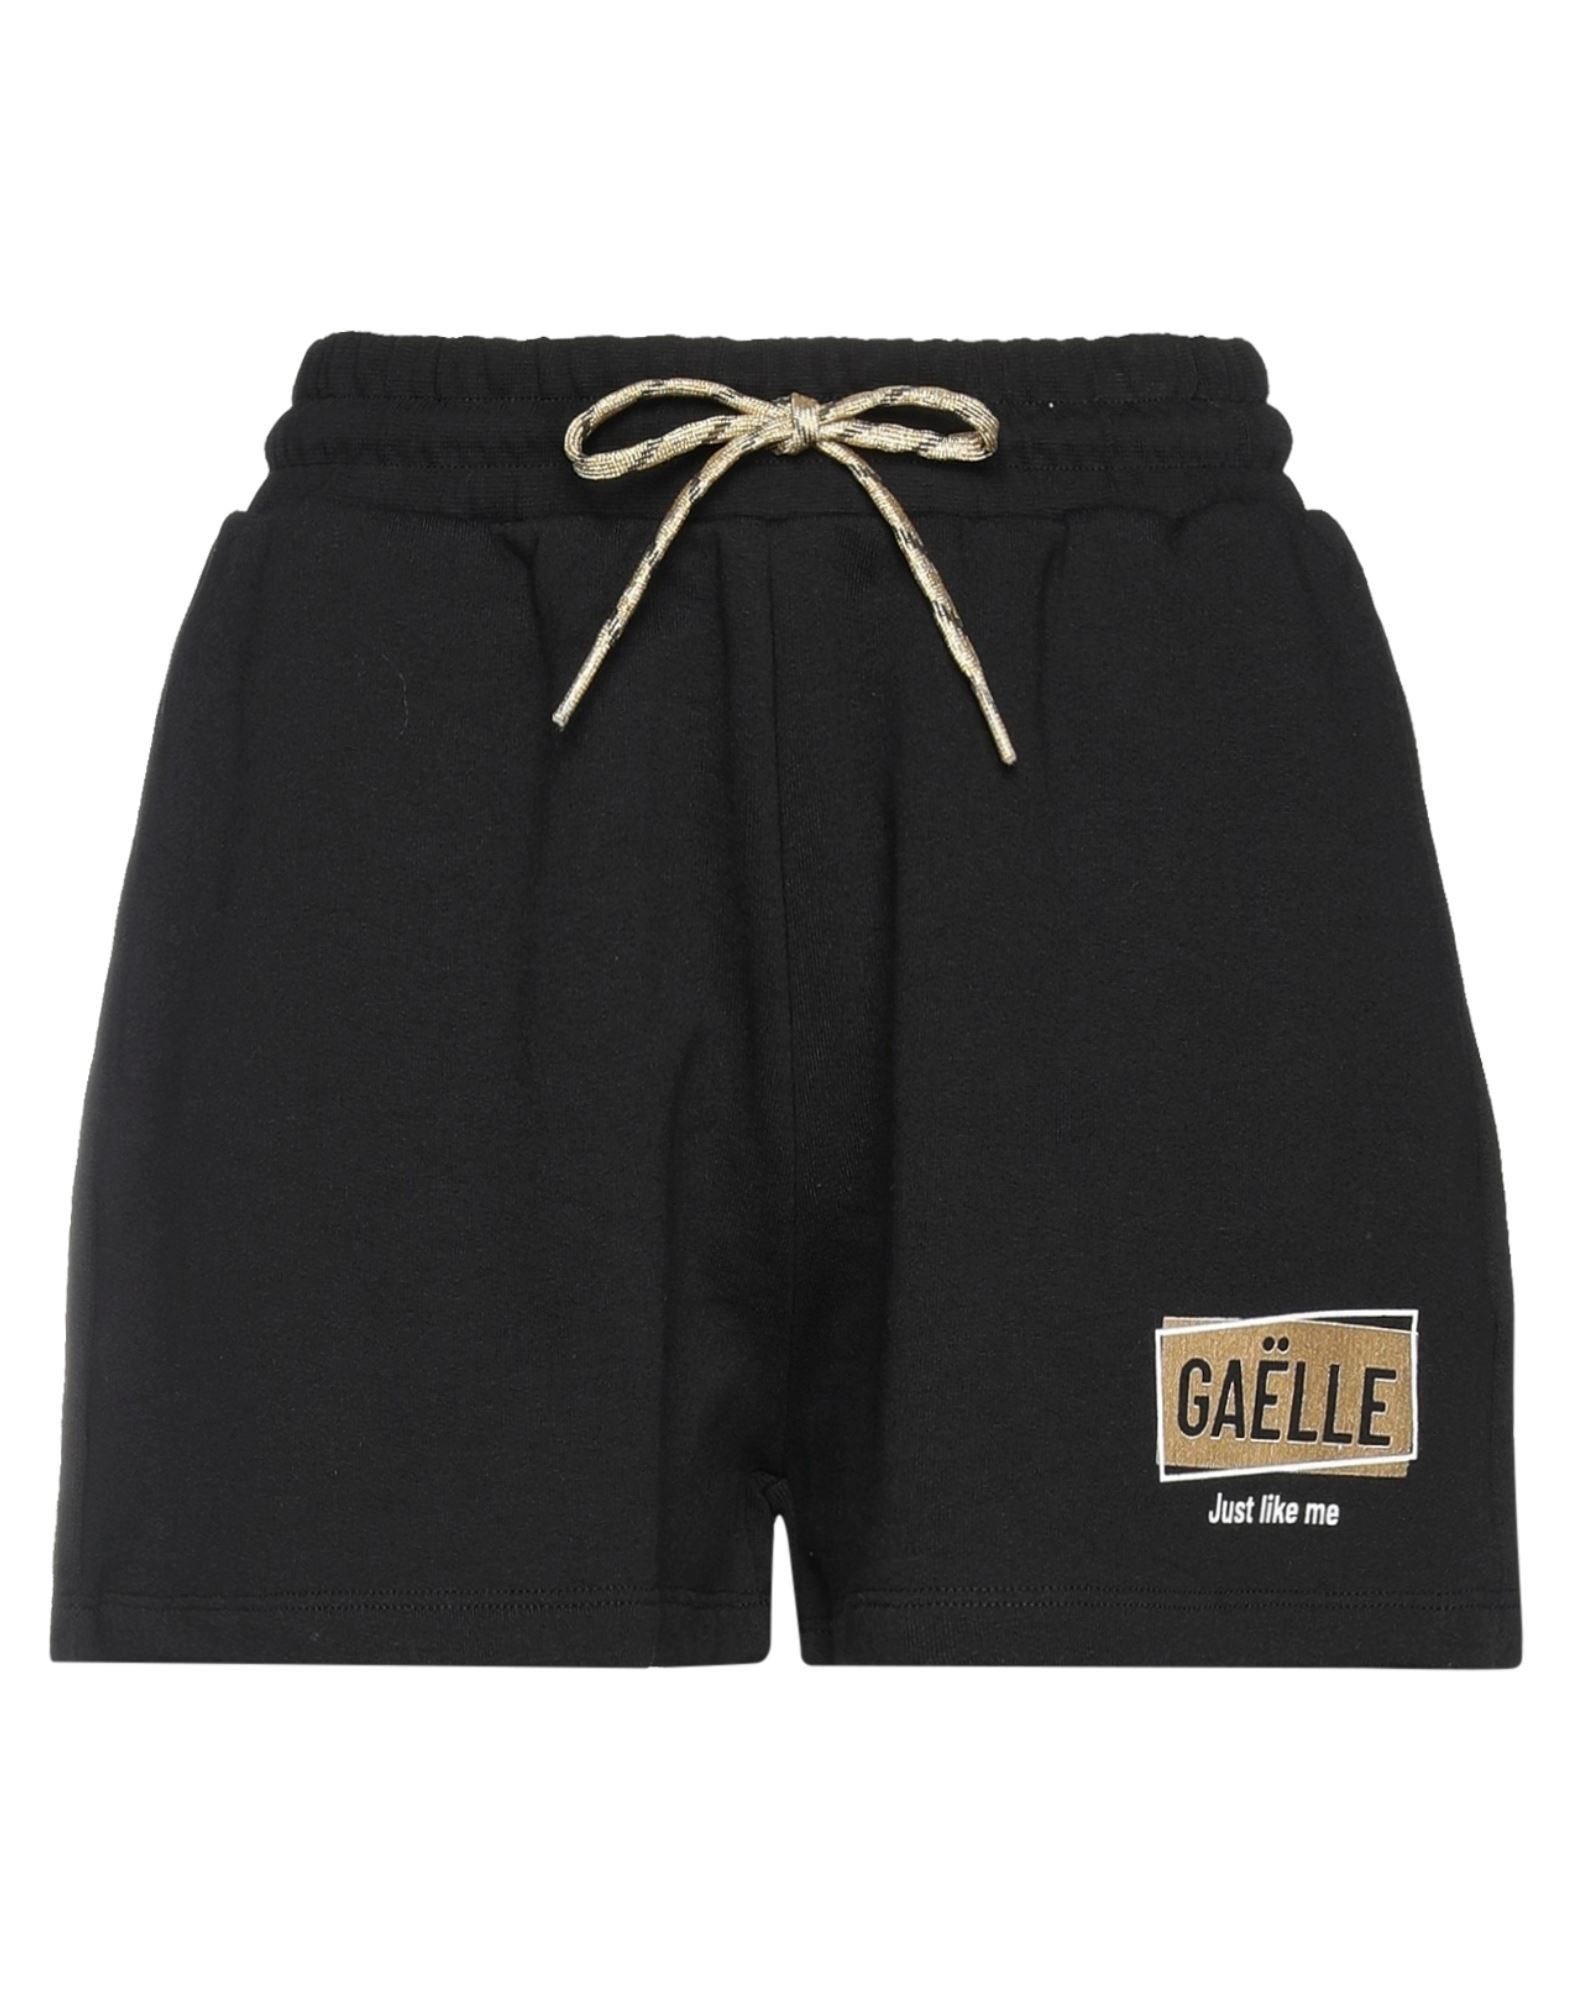 Gaelle Paris Gaëlle Paris Woman Shorts & Bermuda Shorts Black Size 1 Cotton